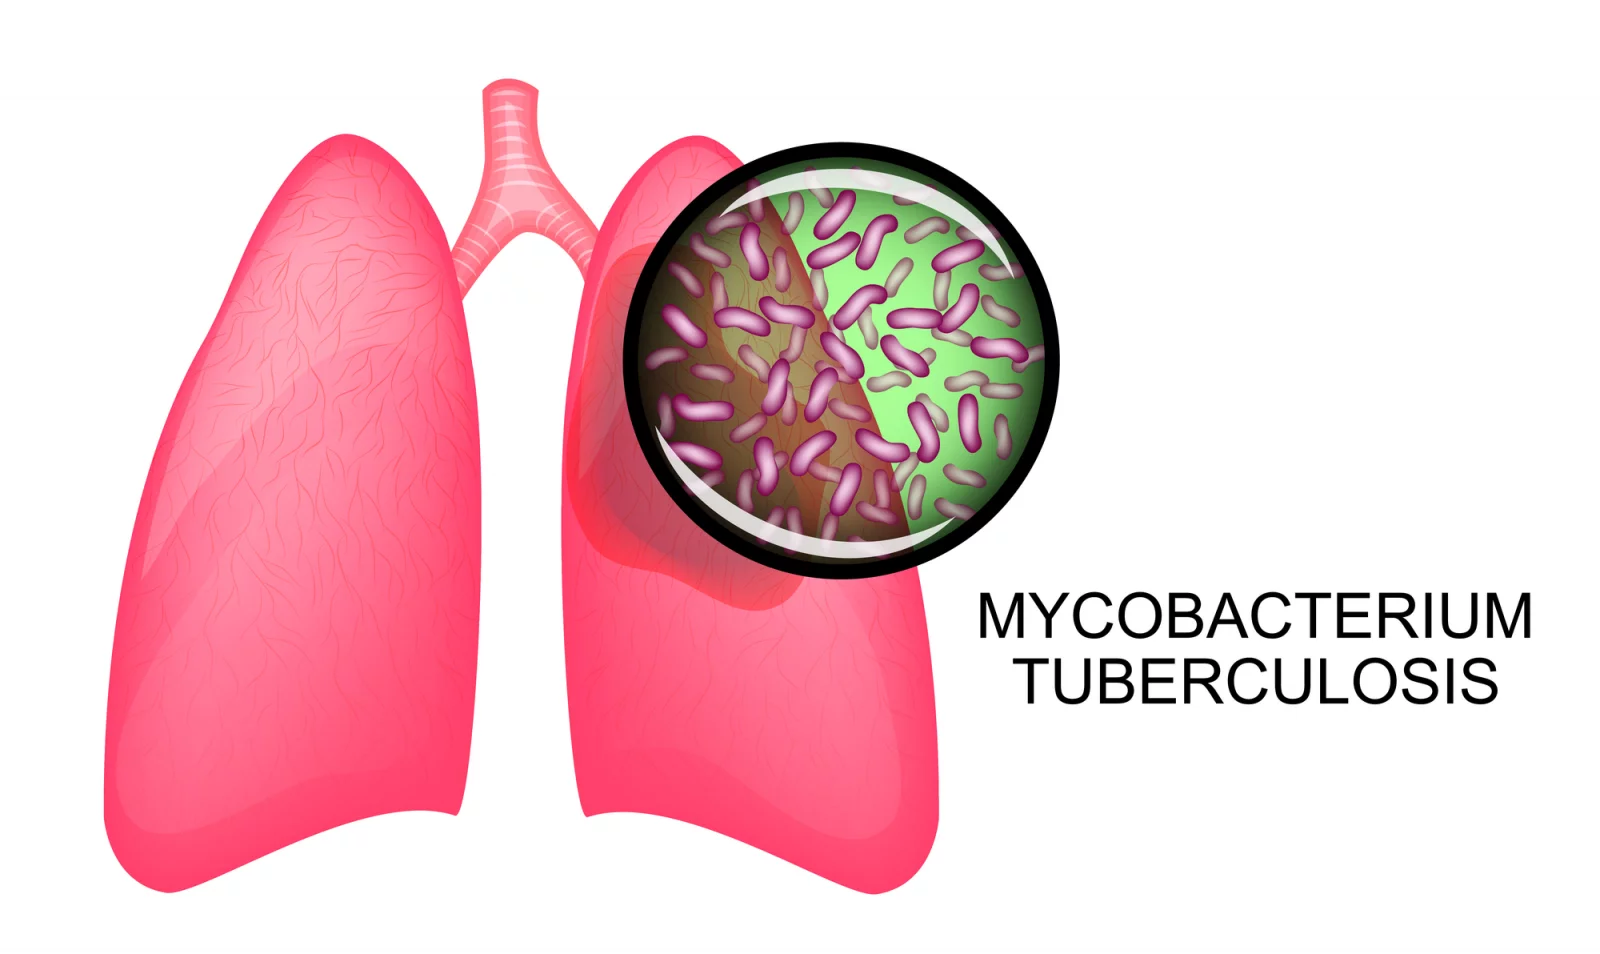 Co všechno je dobré vědět o tuberkulóze